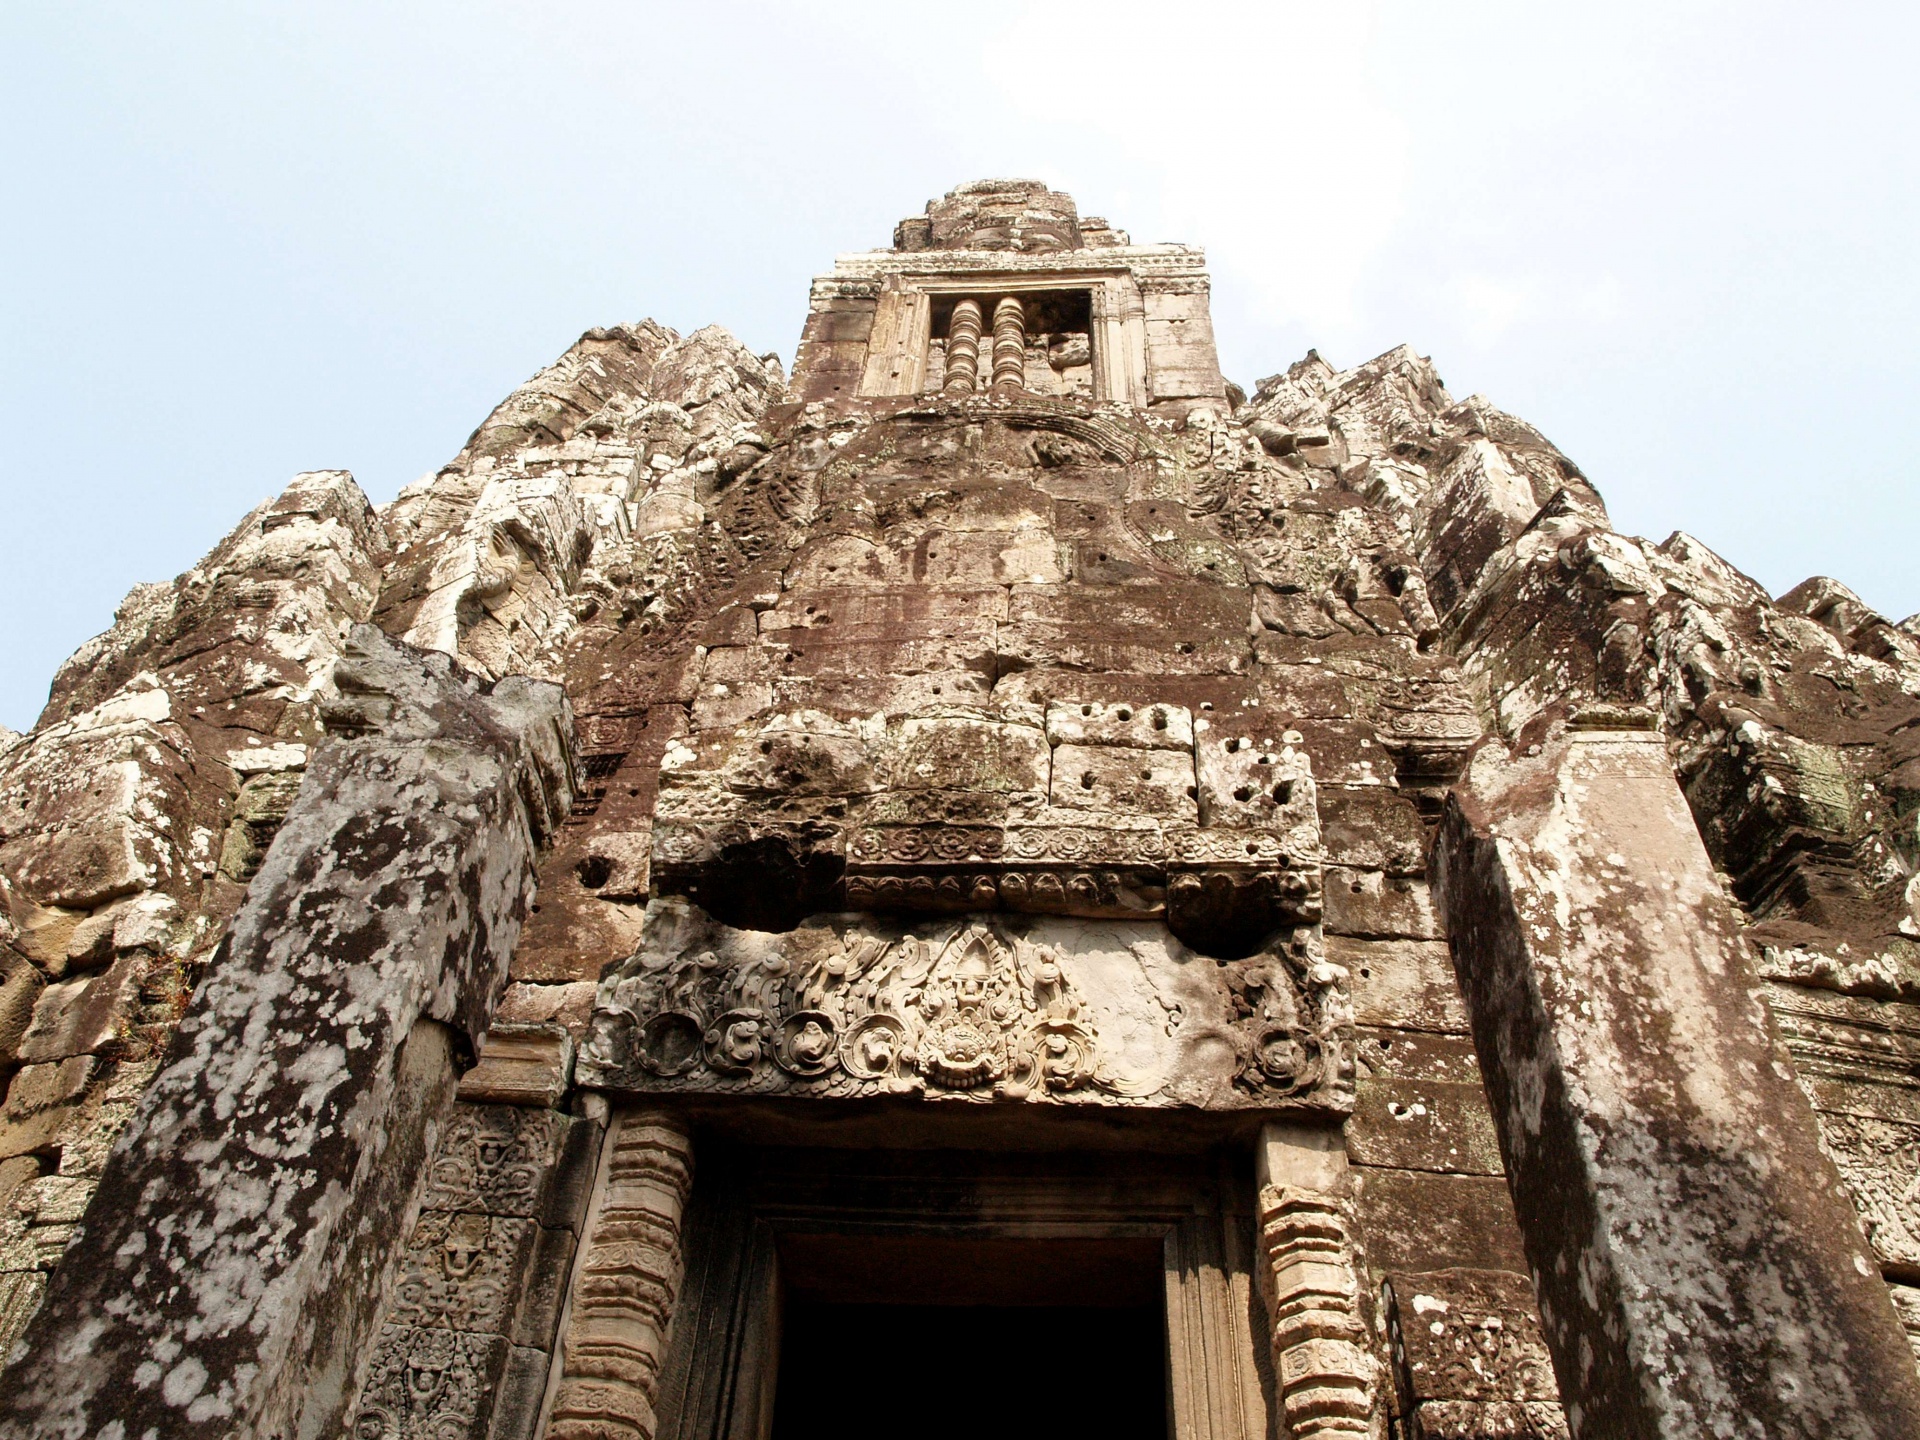 Arquitectura jemer templo de Bayon, Angk